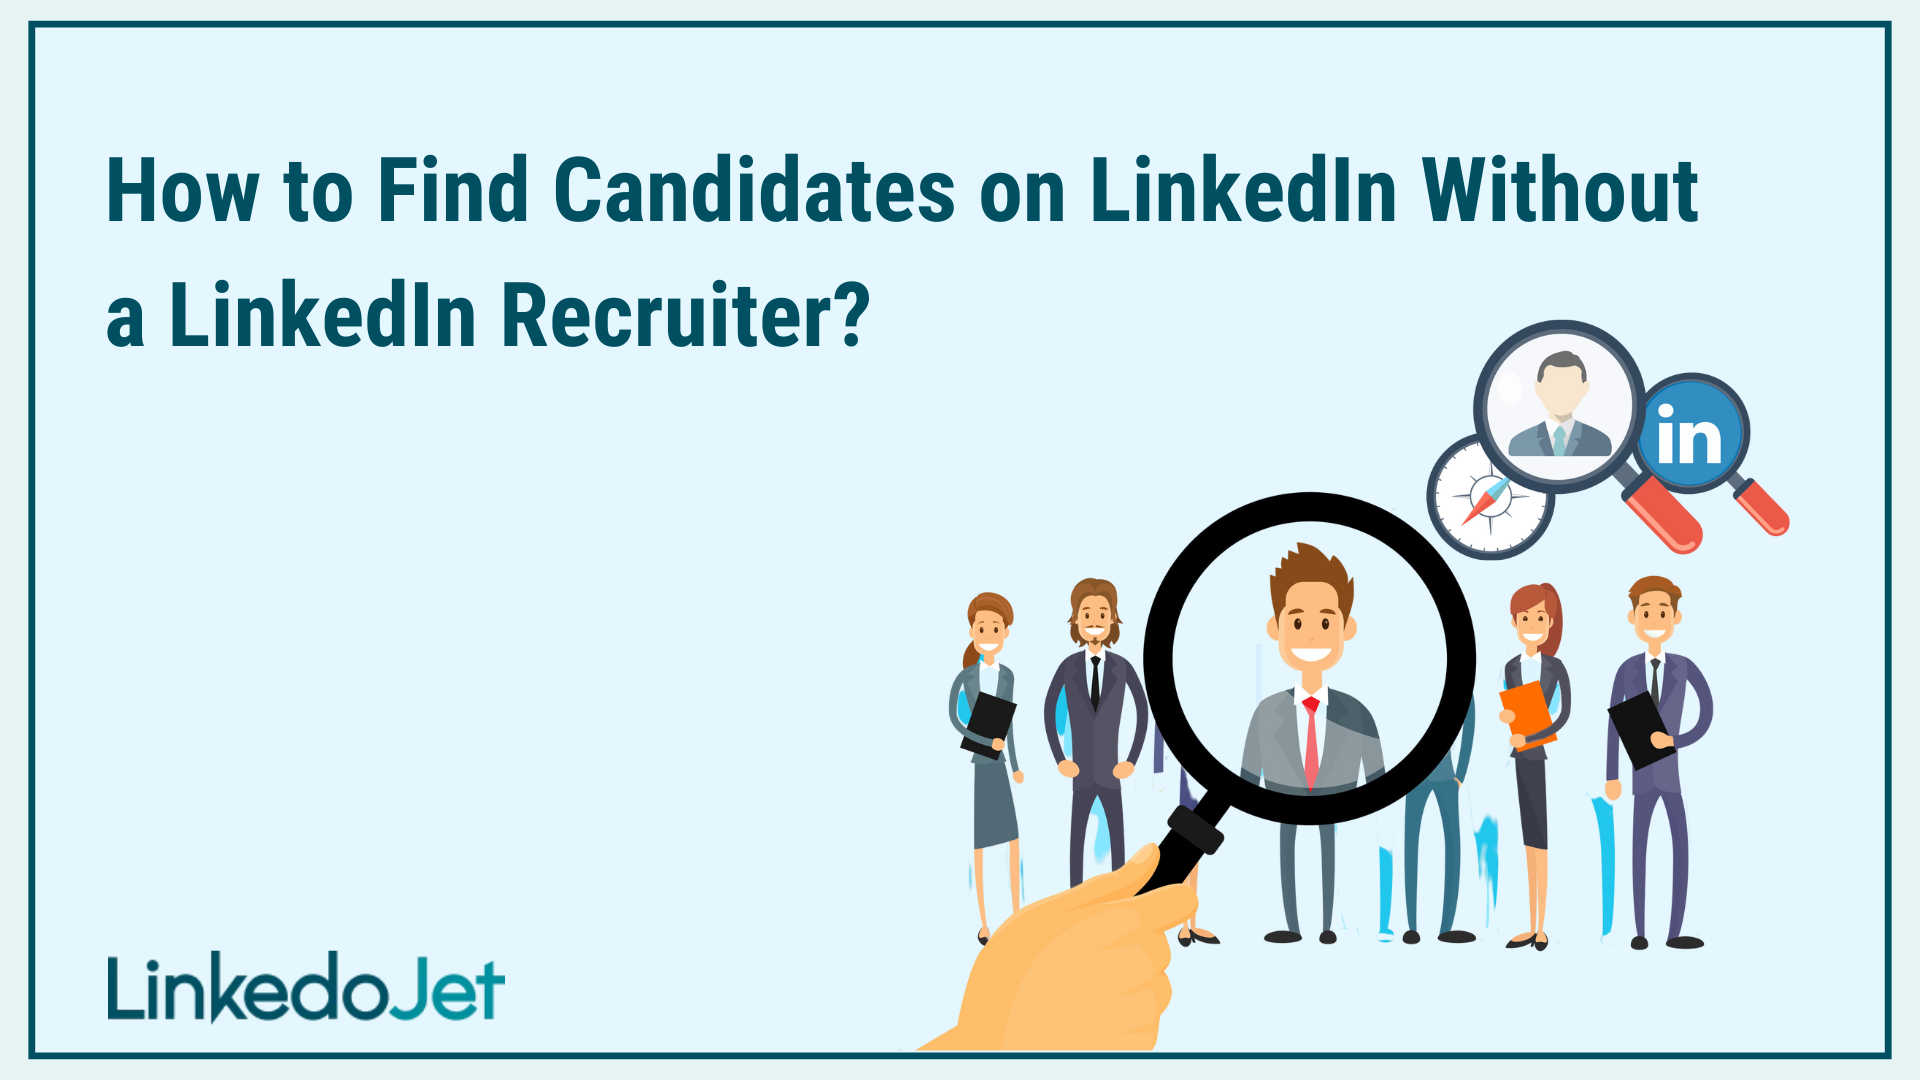 LinkedIn recruiter